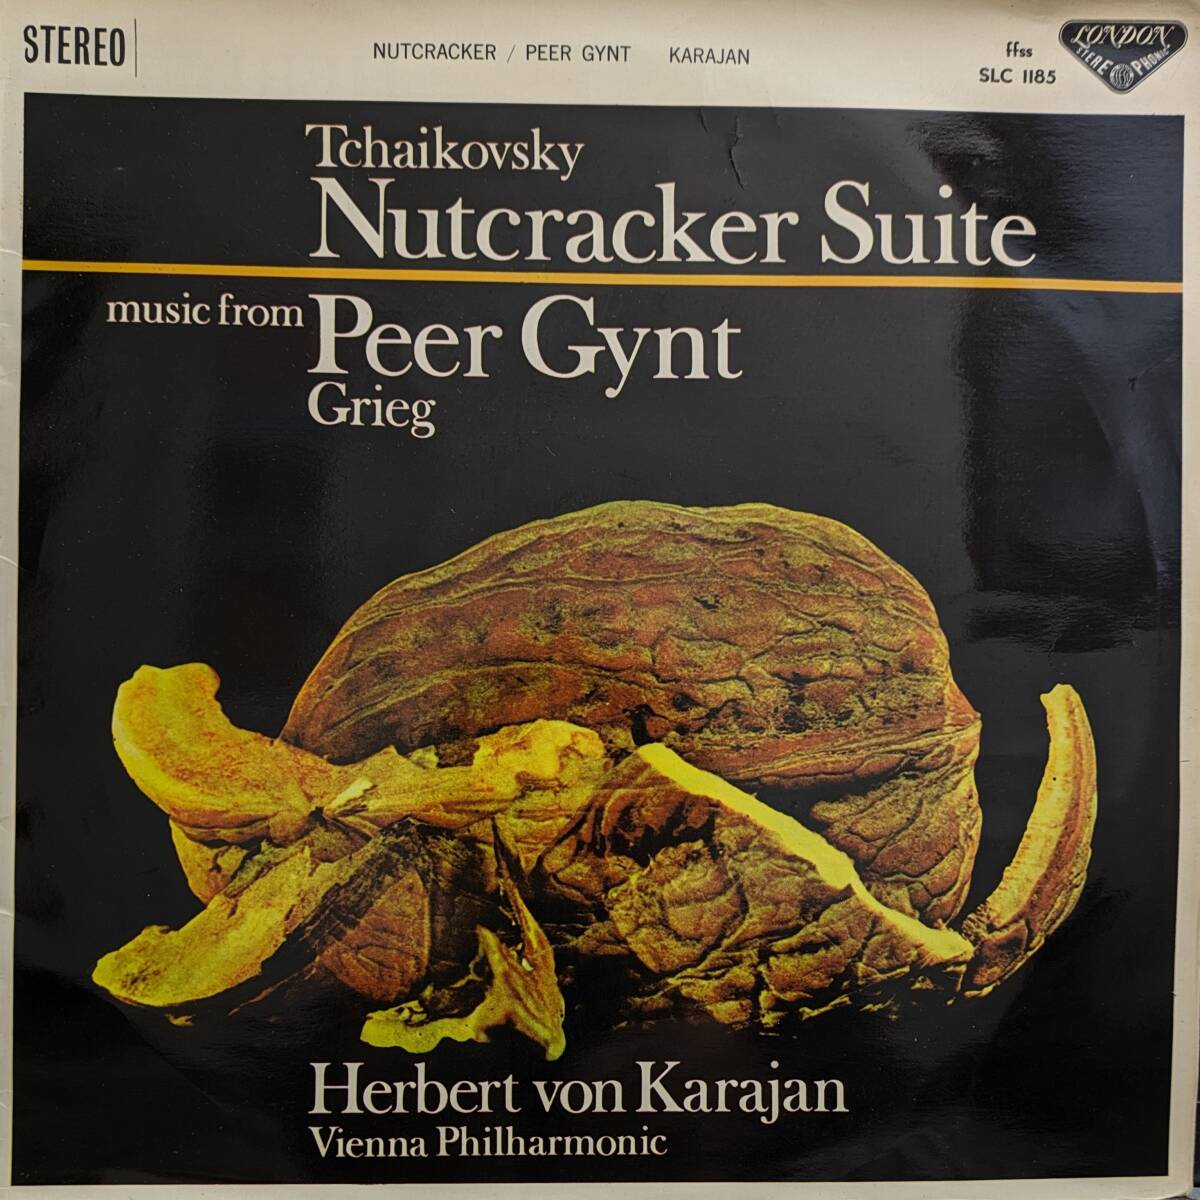 初期LP盤 ヘルベルト・フォン・カラヤン/Wiener Phil　Grieg 「ペール・ギュント」組曲 & Tchaikovsky バレエ組曲「くるみ割り人形」_画像1